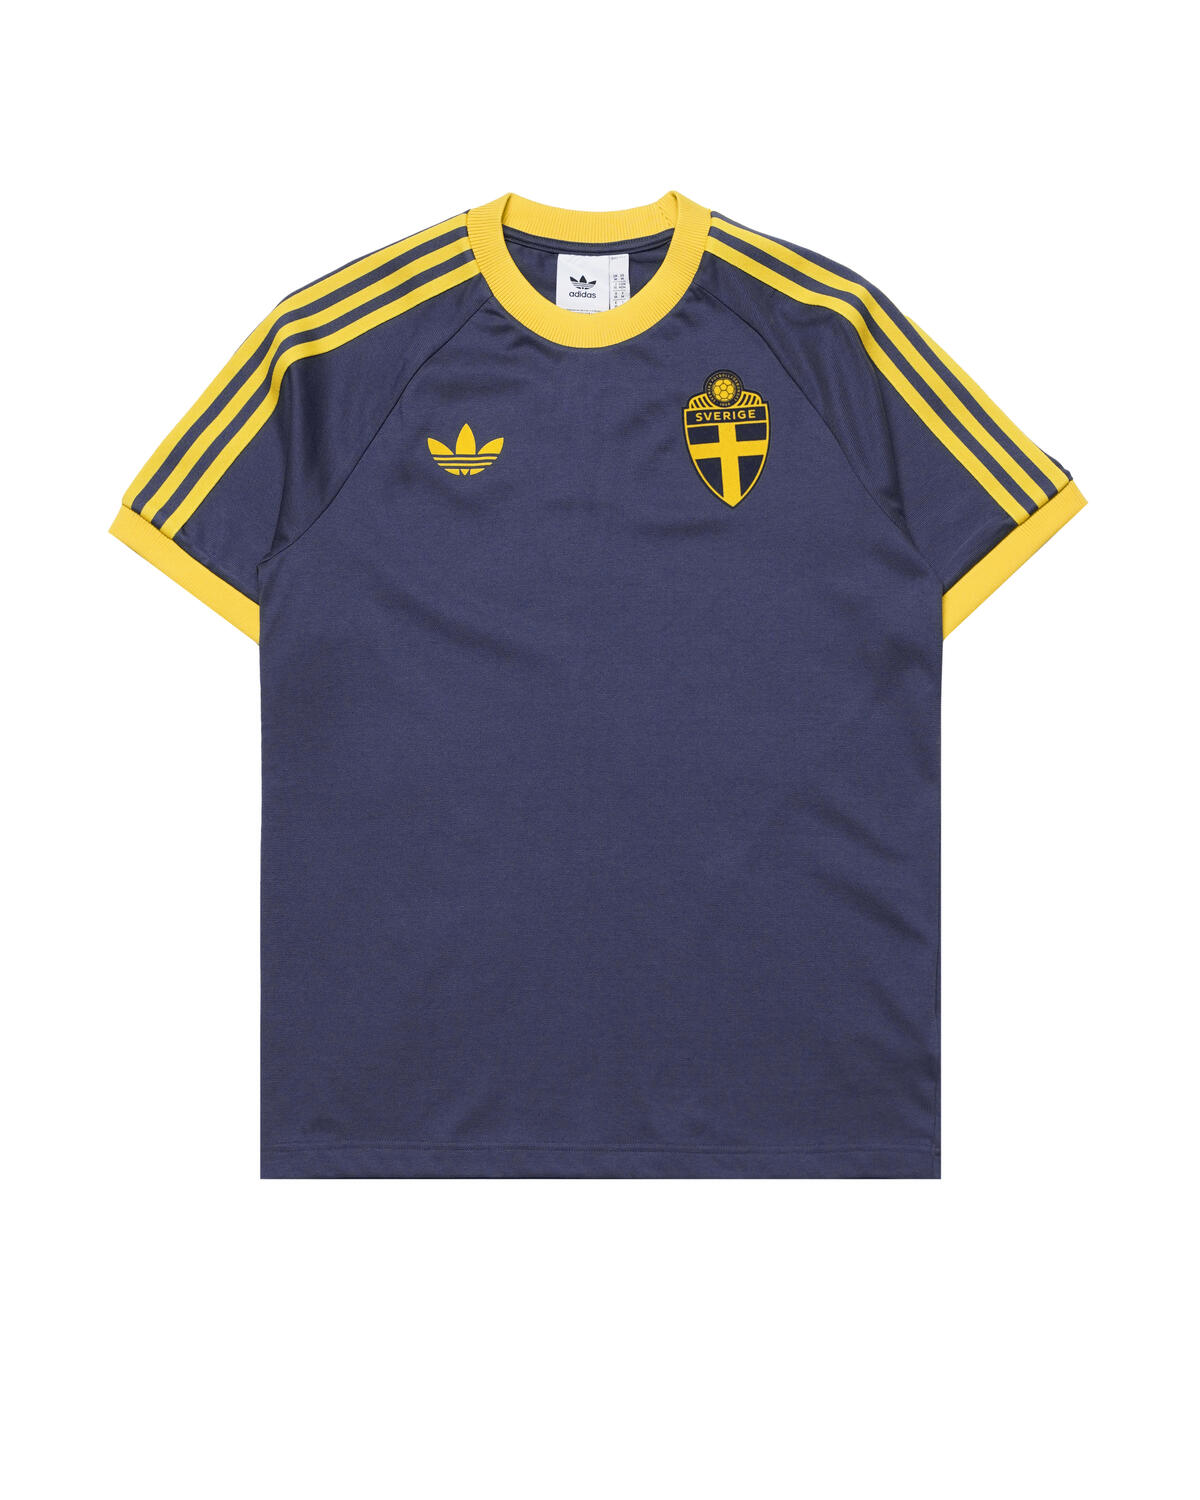 Adidas Originals Sweden SVFF OG STORE 3 Stripes | AFEW IT7799 | TEE